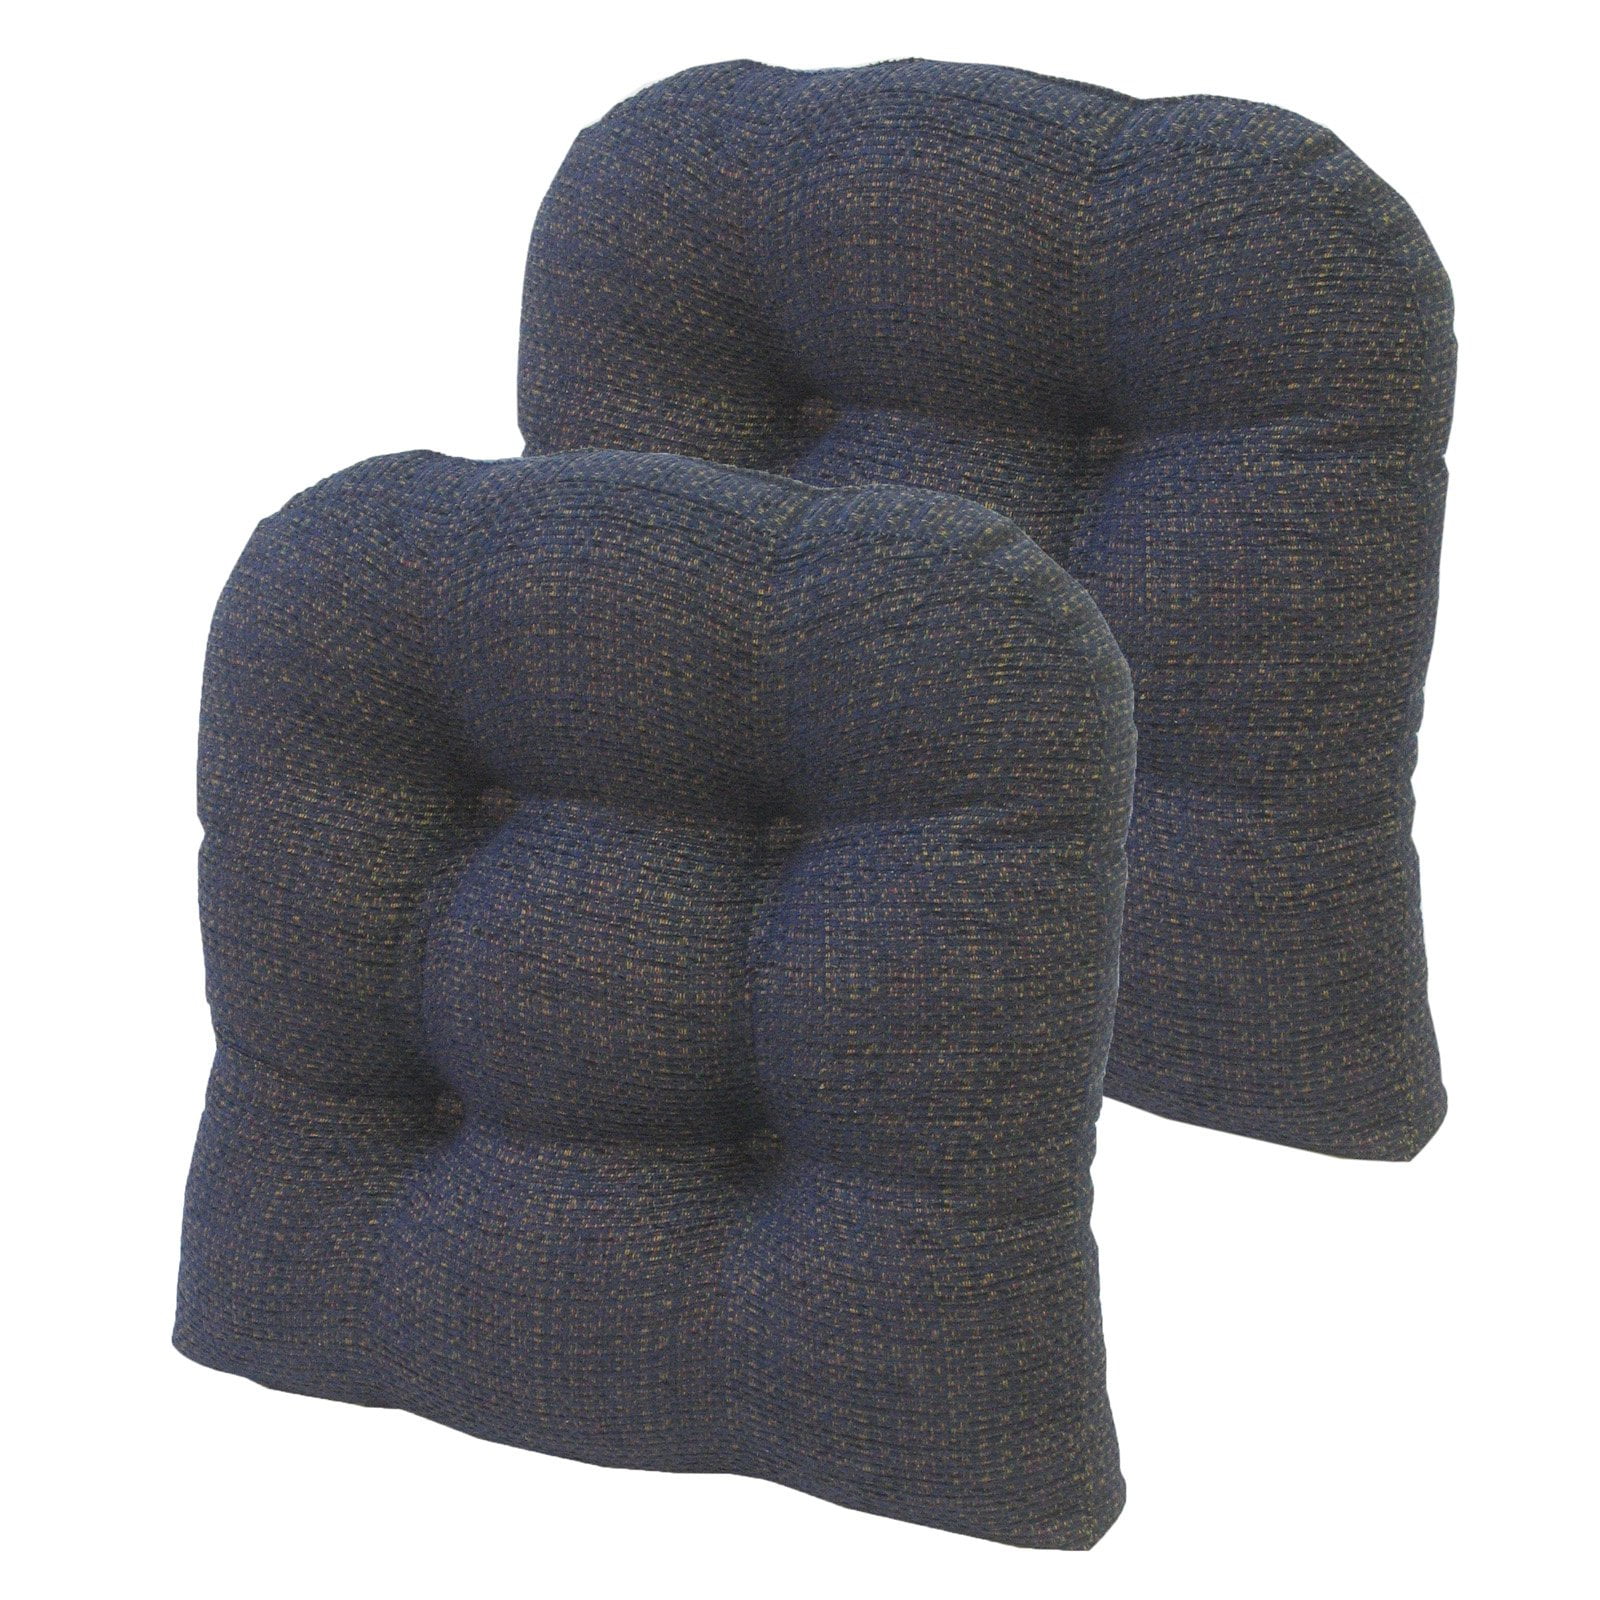 Klear Vu Gripper Tyson Universal Dining Chair Cushion - Set of 2